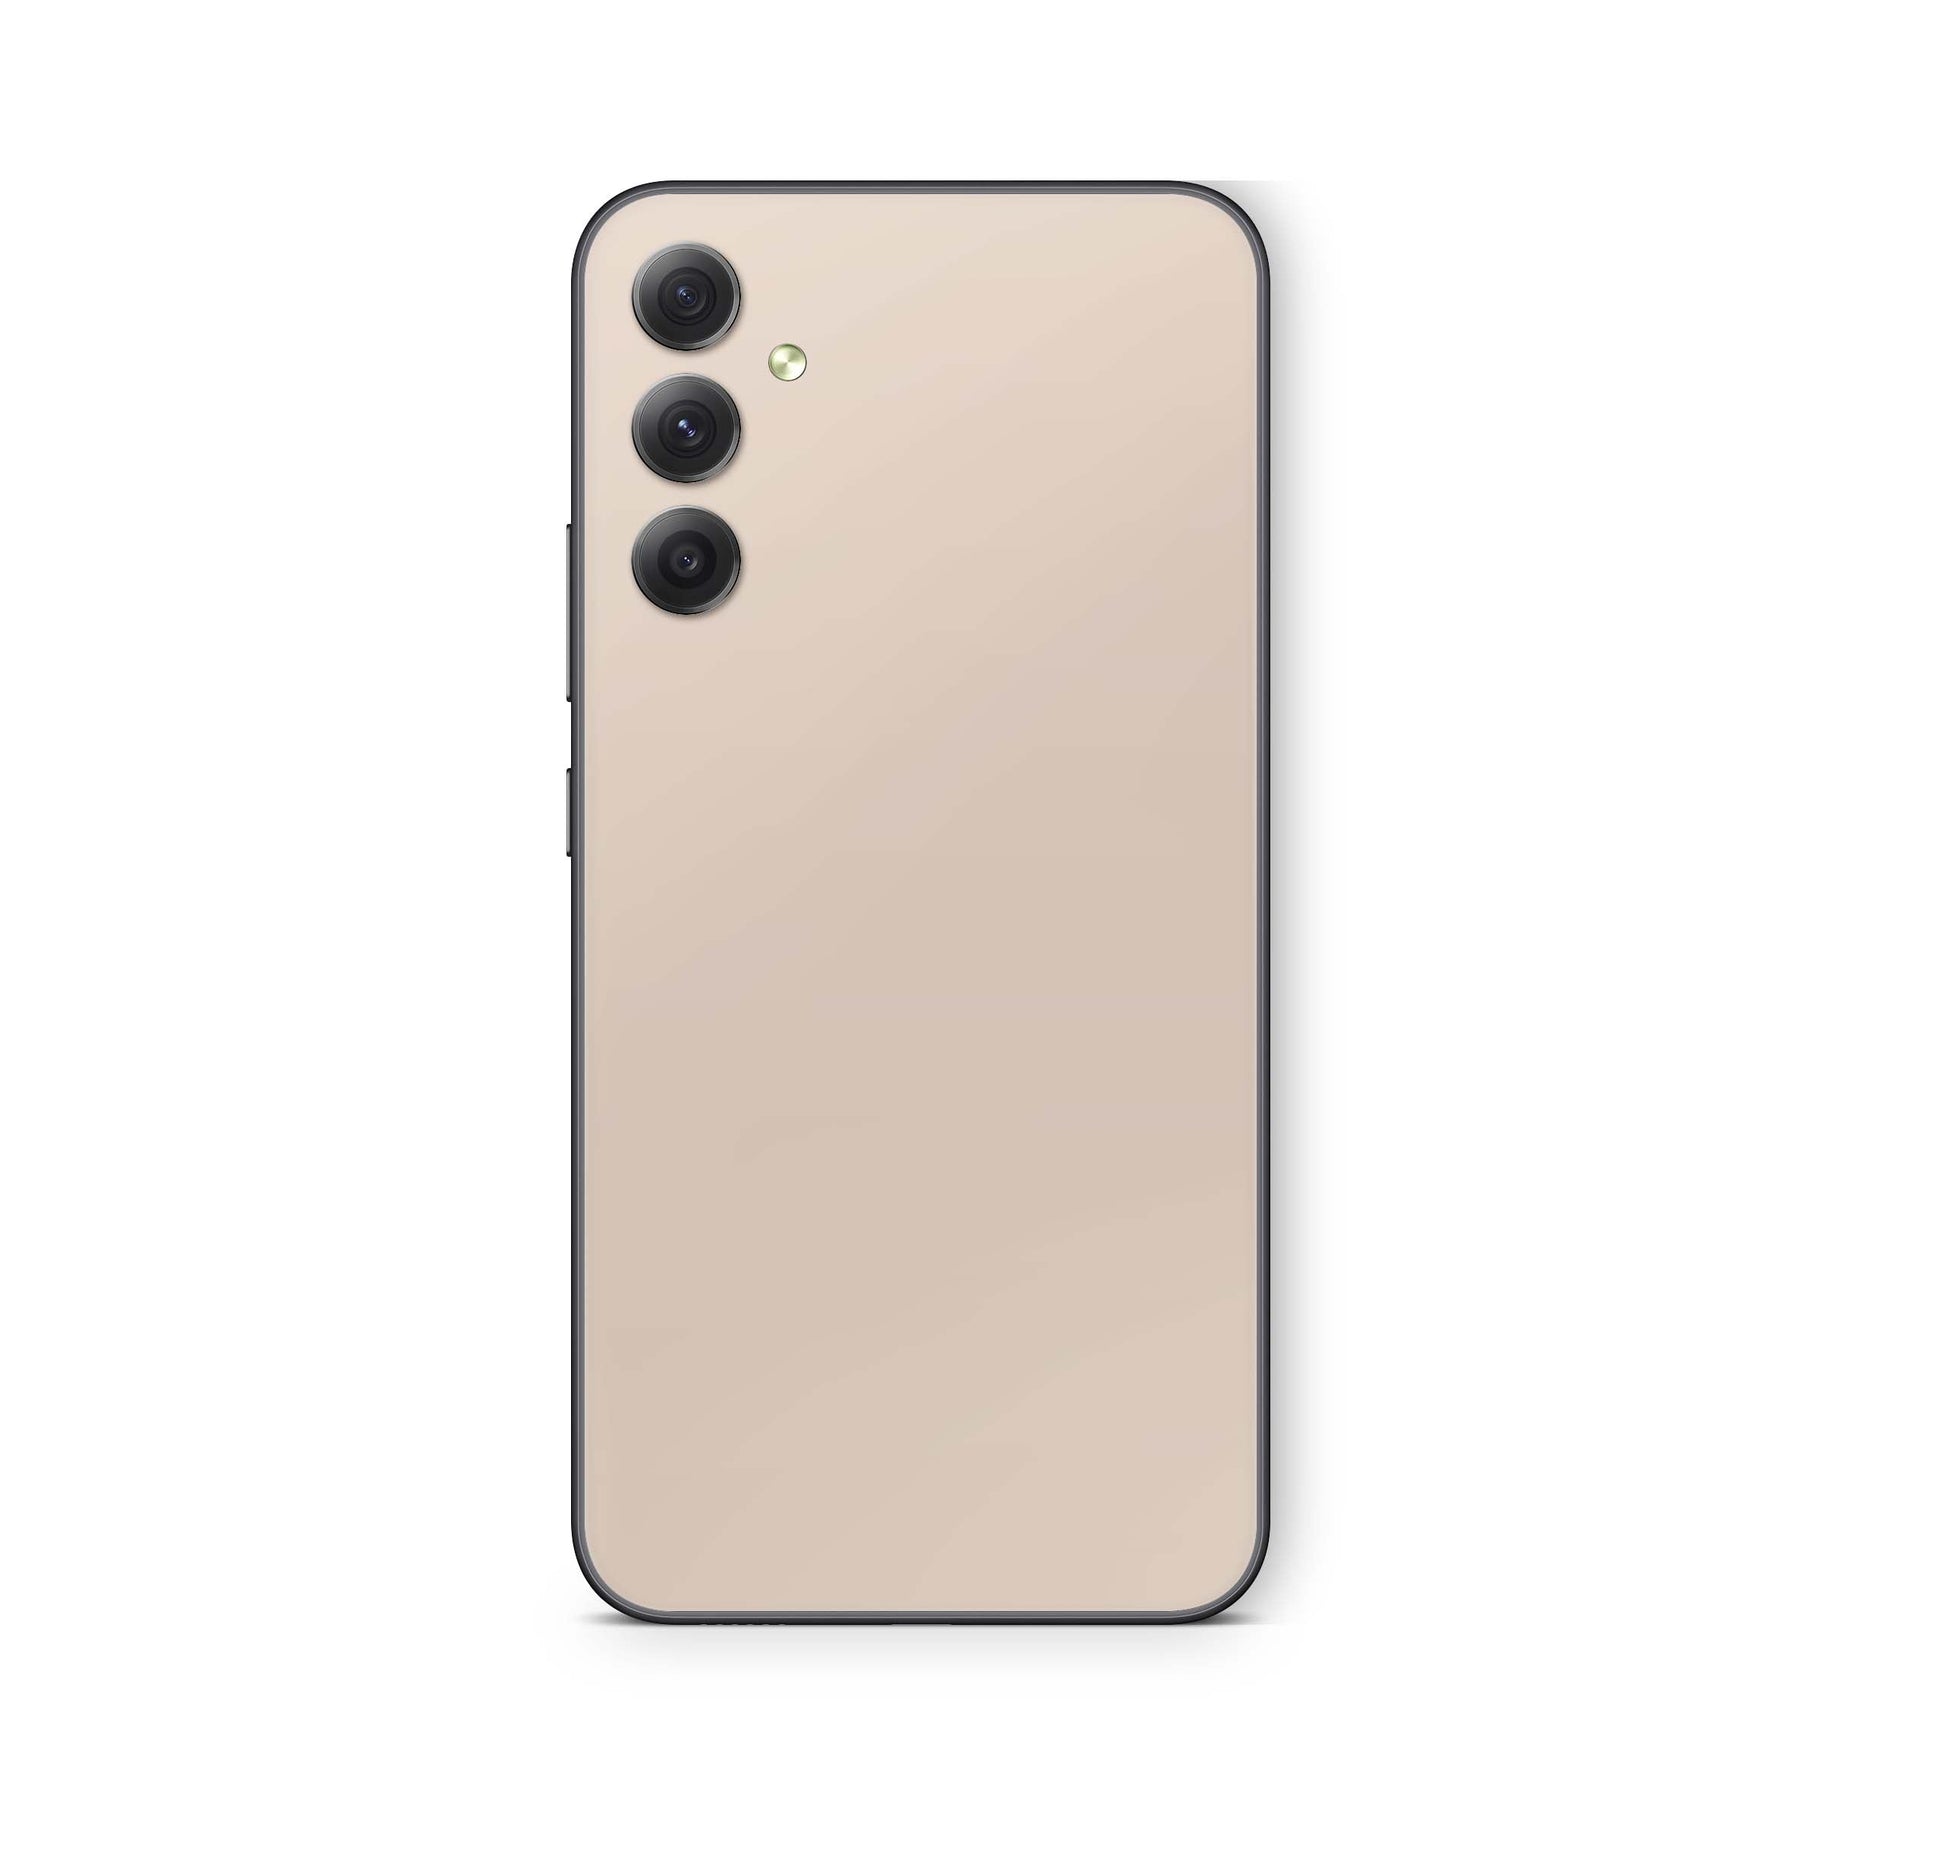 Samsung Galaxy A52 Skin Schutzfolie Aufkleber Skins Design Solid state cream Elektronik-Sticker & -Aufkleber skins4u   